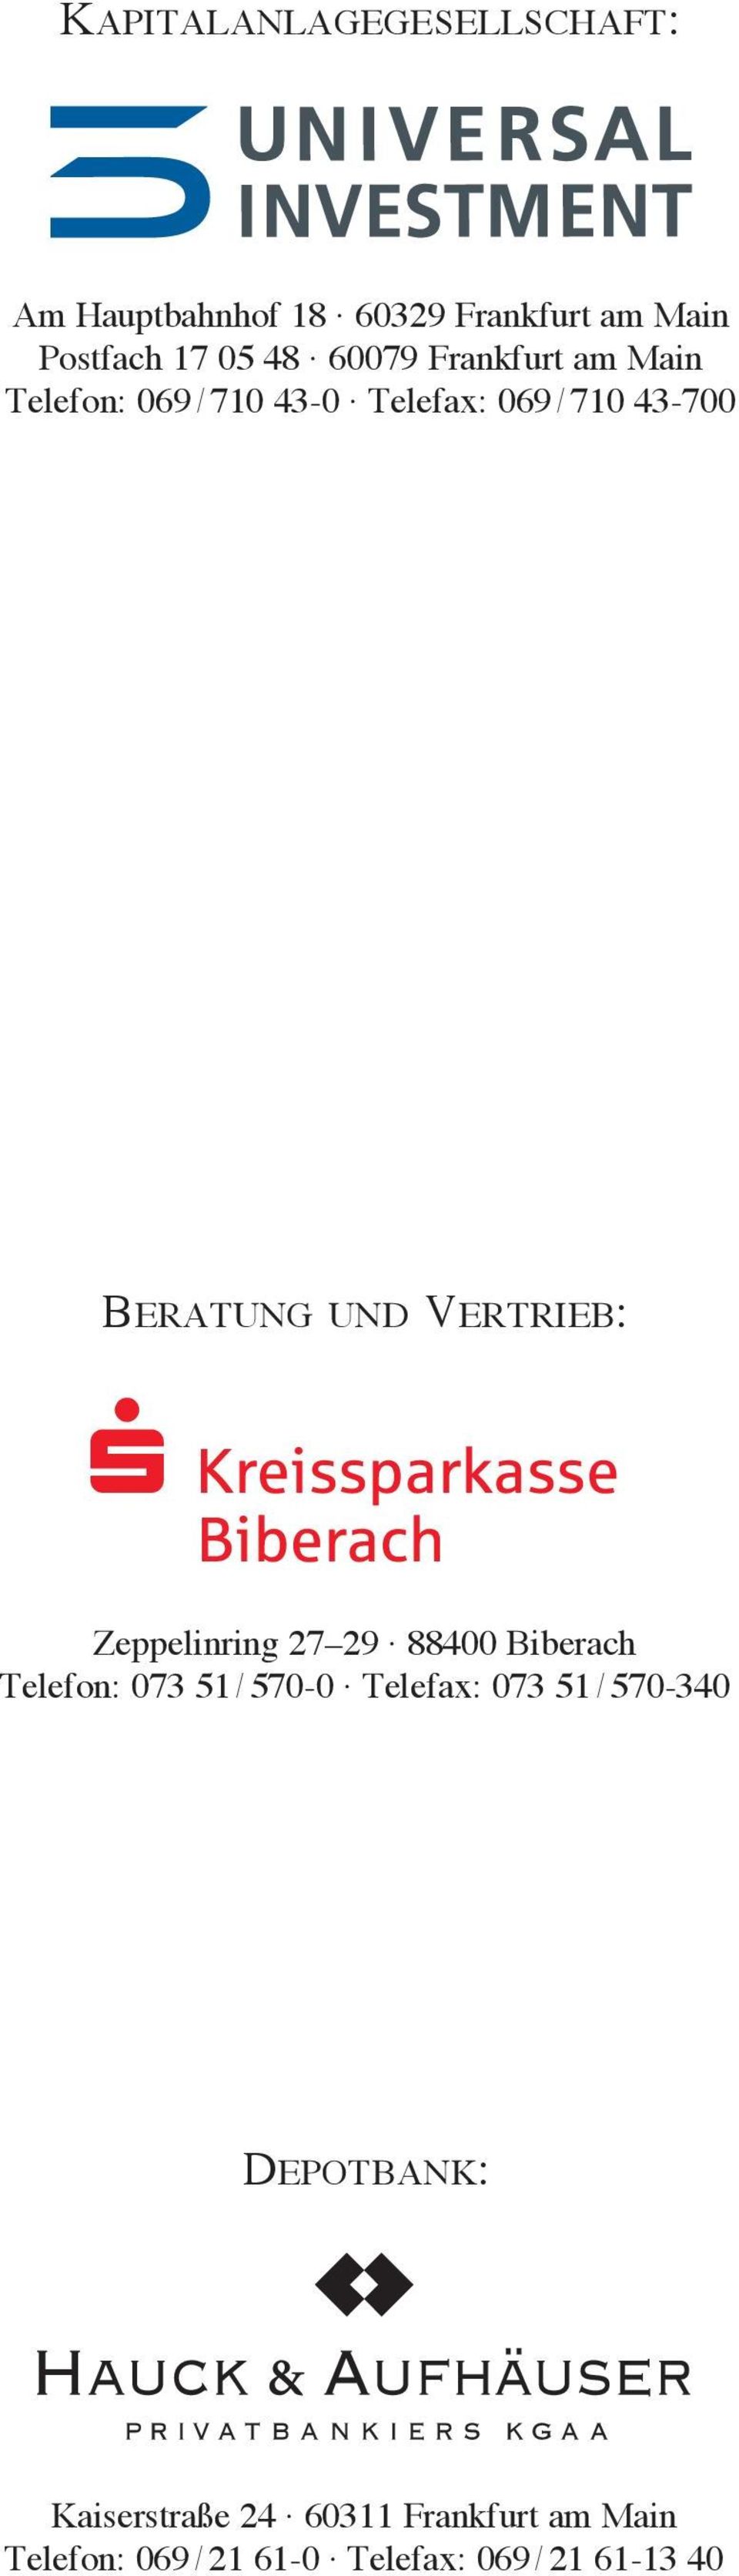 Kreissparkasse Biberach Zeppelinring 27 29 88400 Biberach Telefon: 073 51 / 570-0 Telefax: 073 51 /